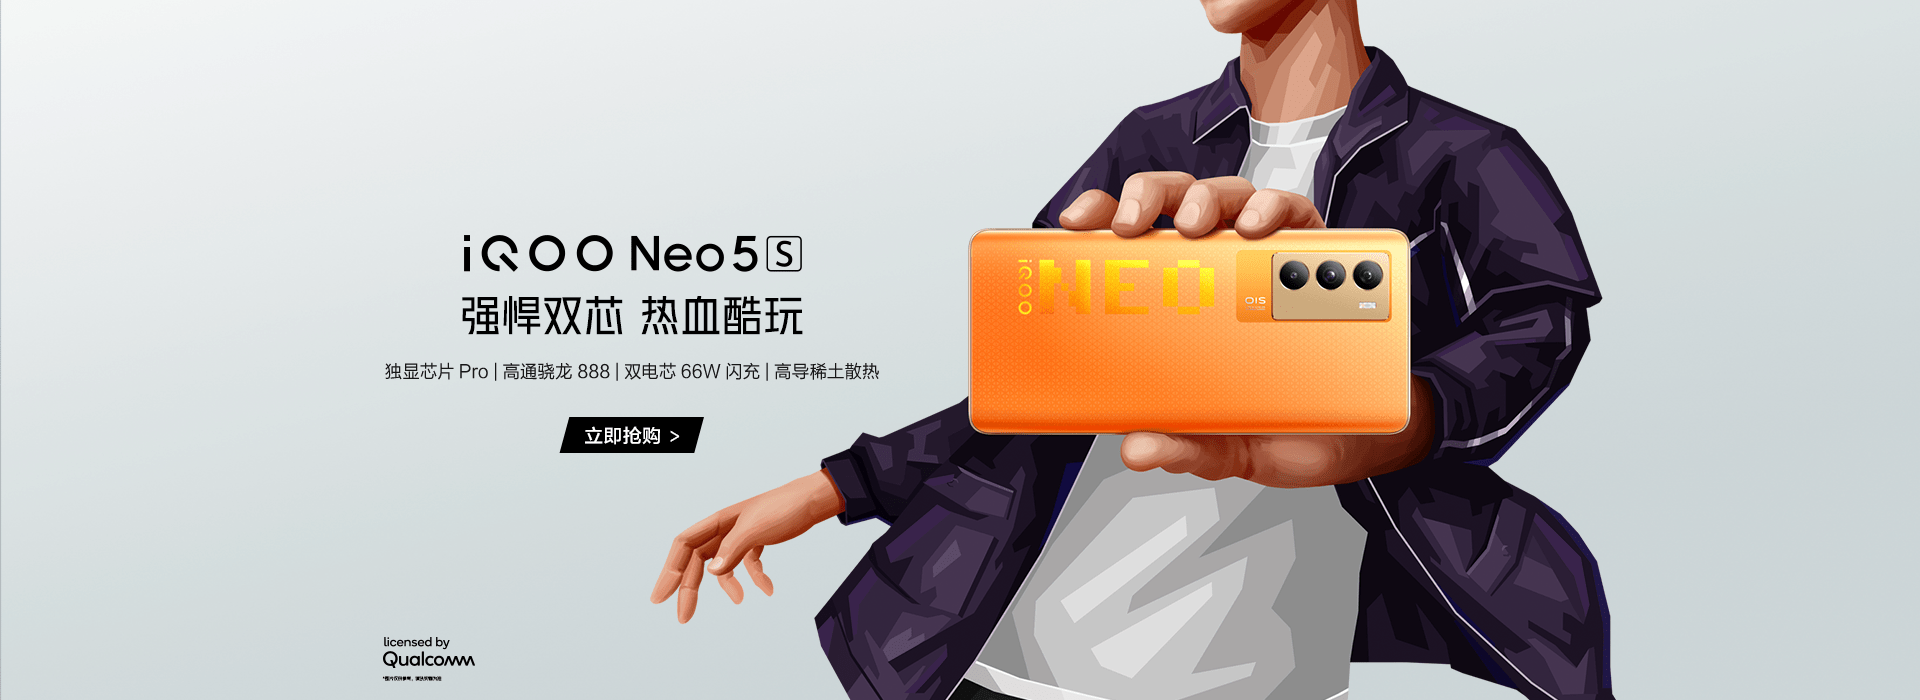 苏宁|iQOO Neo5S超级新品上线，上苏宁购新机可抢限量定制礼盒